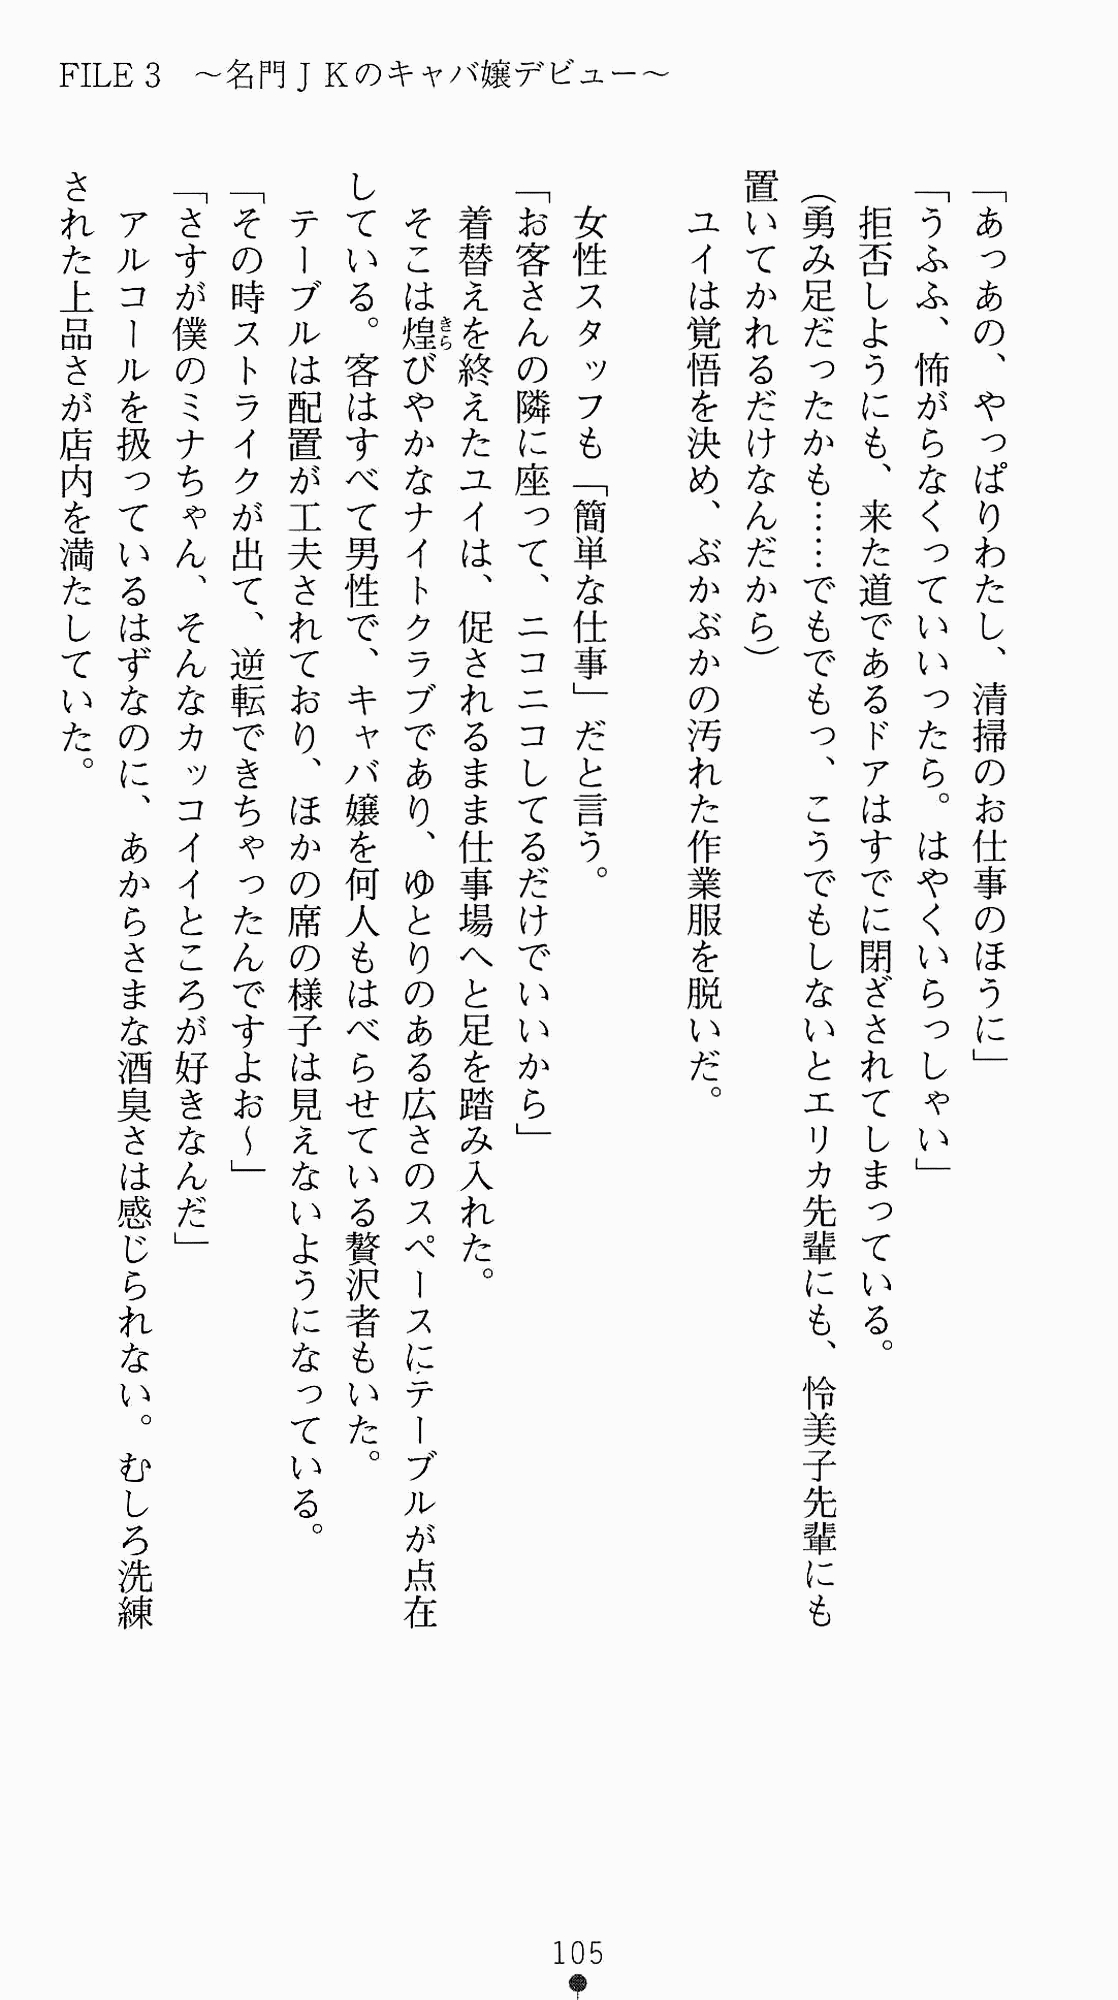 [Kagura Youko, Takahama Tarou] Shiritsu Tantei Takasuga Erika no Jikenbo 2 - Chijouha AV Satsuei 24-ji 120